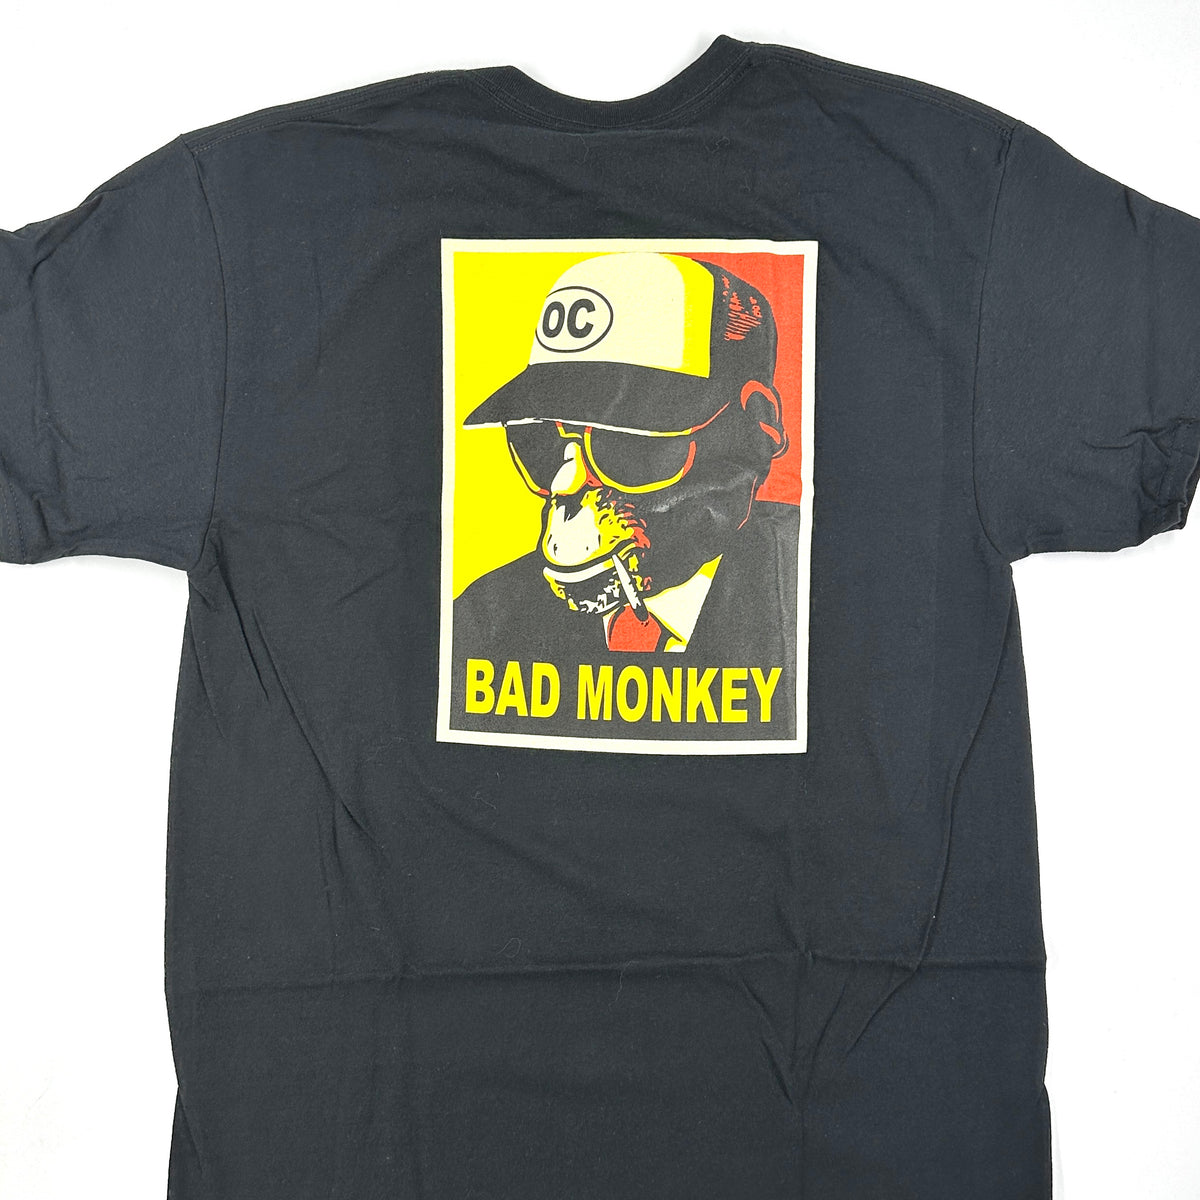 Skeptisk Nemlig Byttehandel Propaganda Monkey Short Sleeve T-shirt – Bad Monkey OC